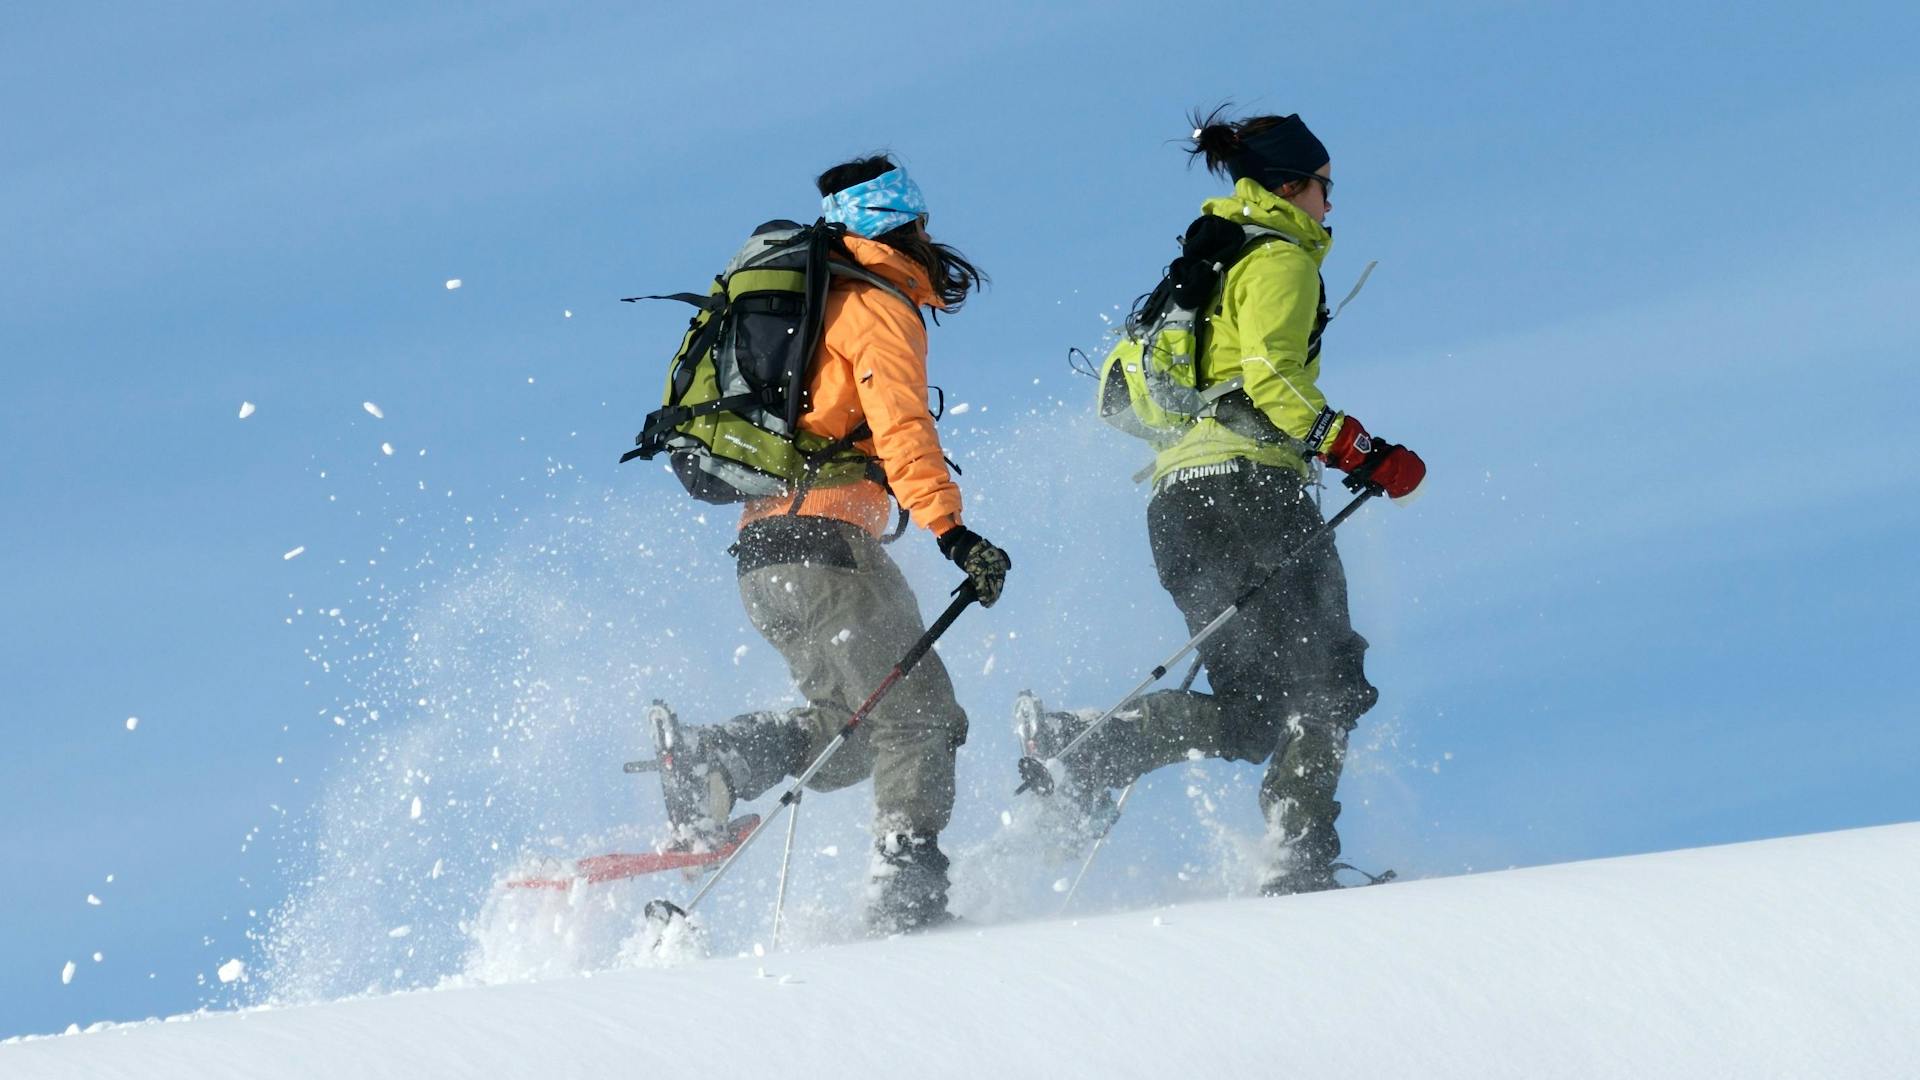 Erleben Sie den Nervenkitzel einer Schneeschuhwanderung, rennend in der Sonne mit umherfliegendem Schnee, mit Nordic Discovery.